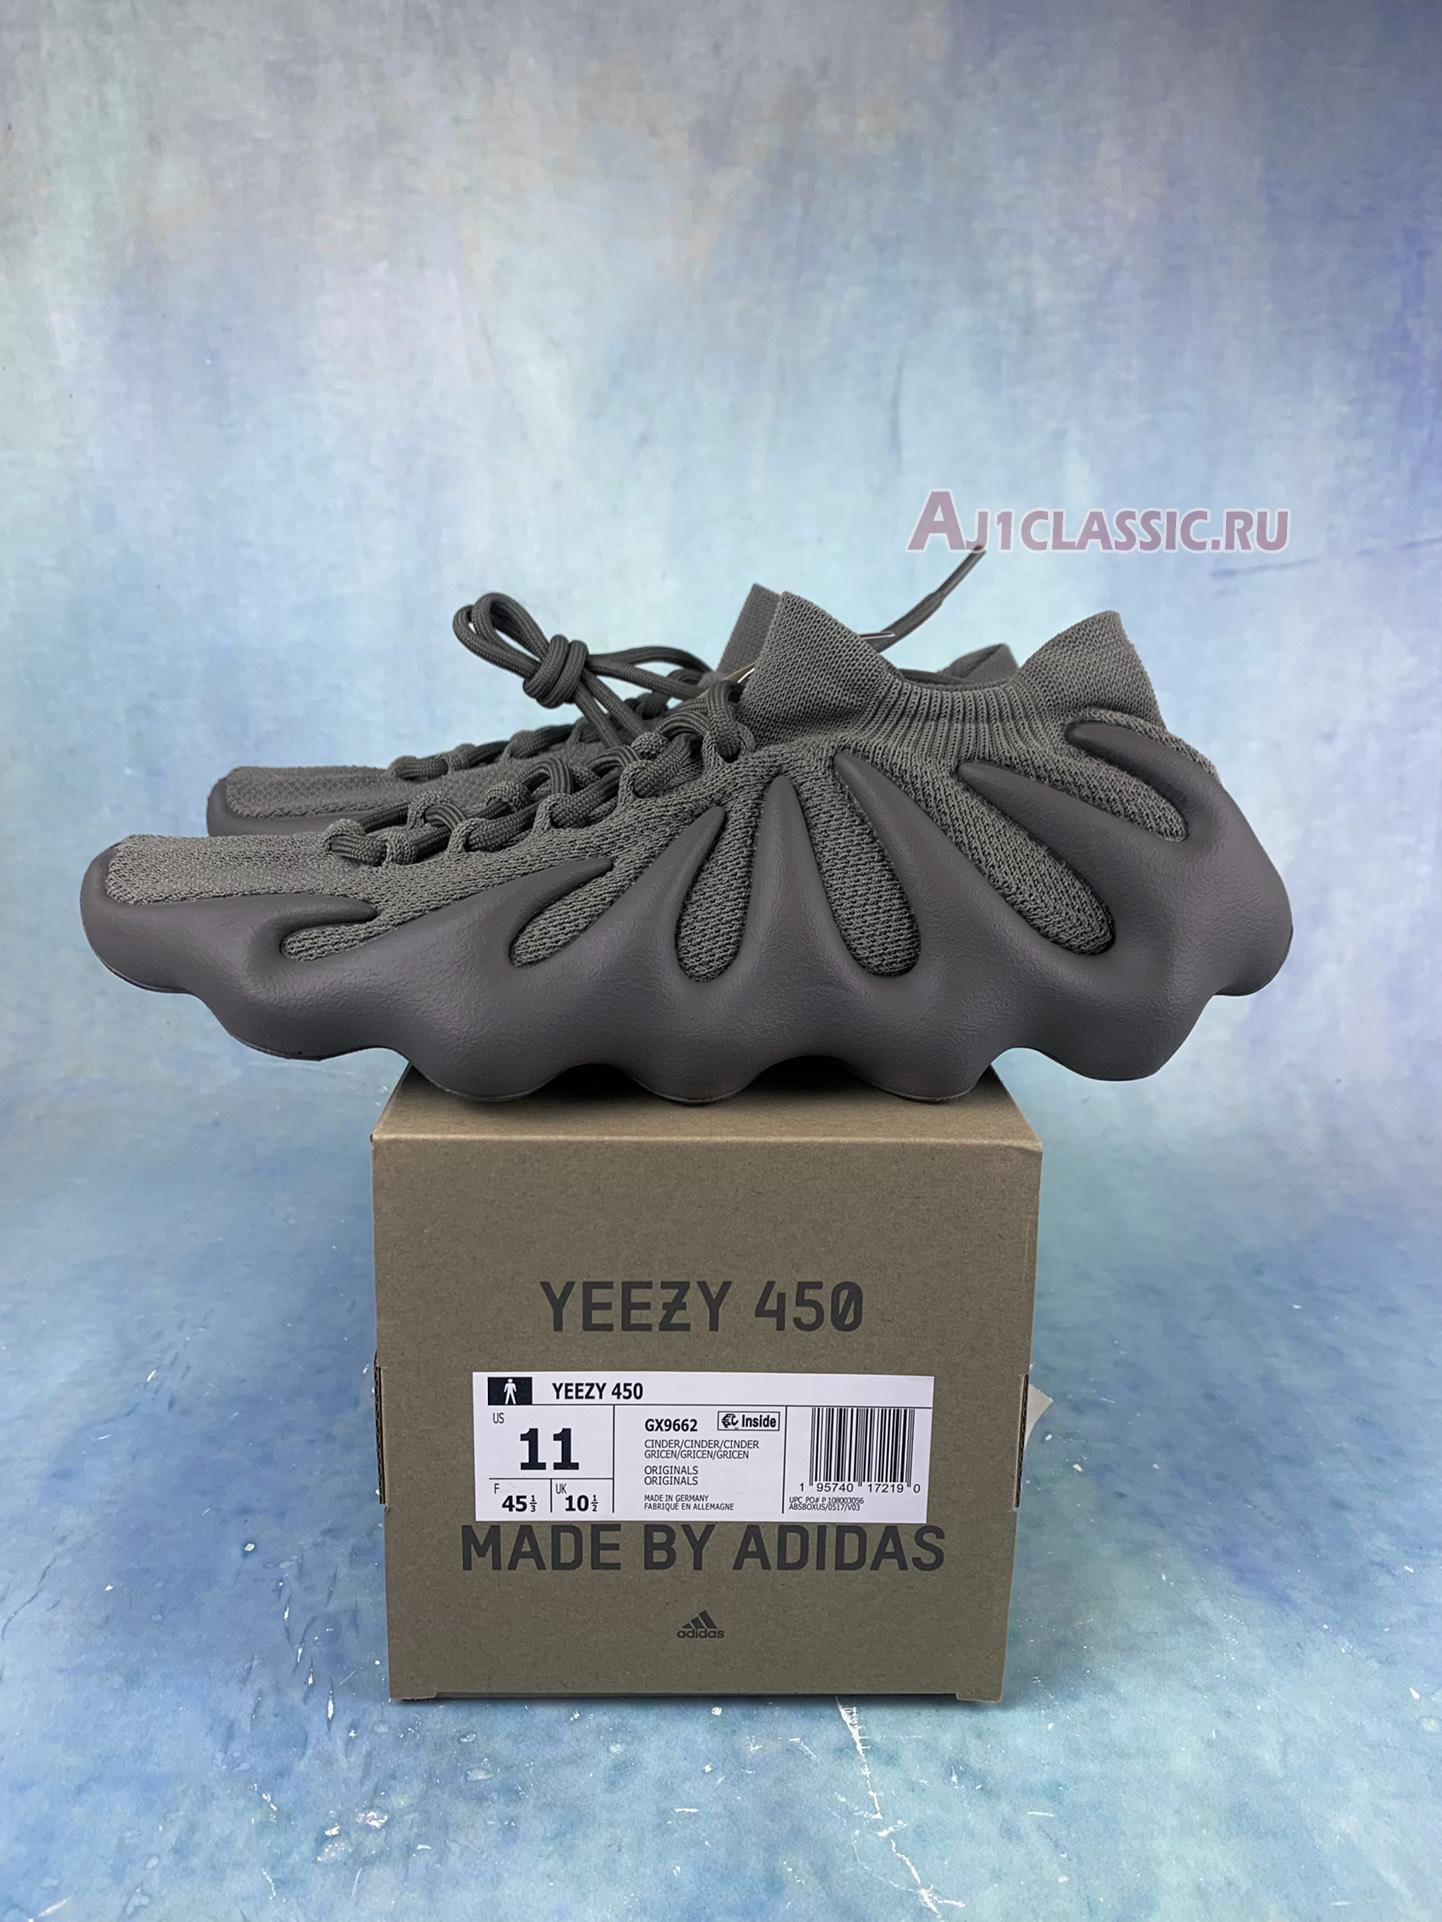 Adidas Yeezy 450 Cinder GX9662 Cinder/Cinder/Cinder Sneakers